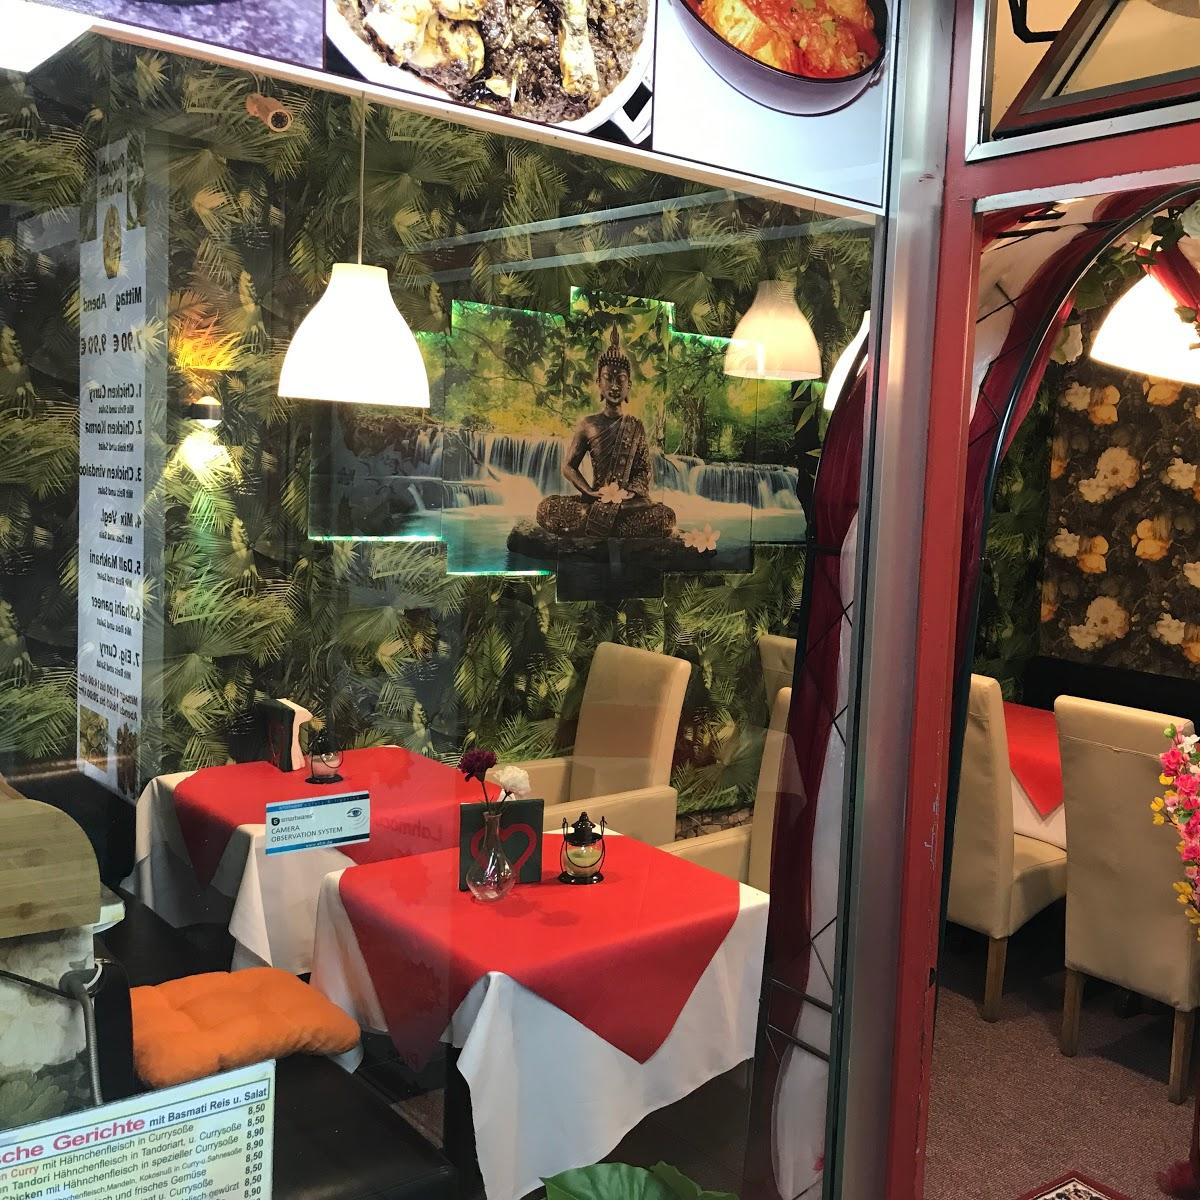 Restaurant "Indisch Punjabi Dhaba" in Wiesloch